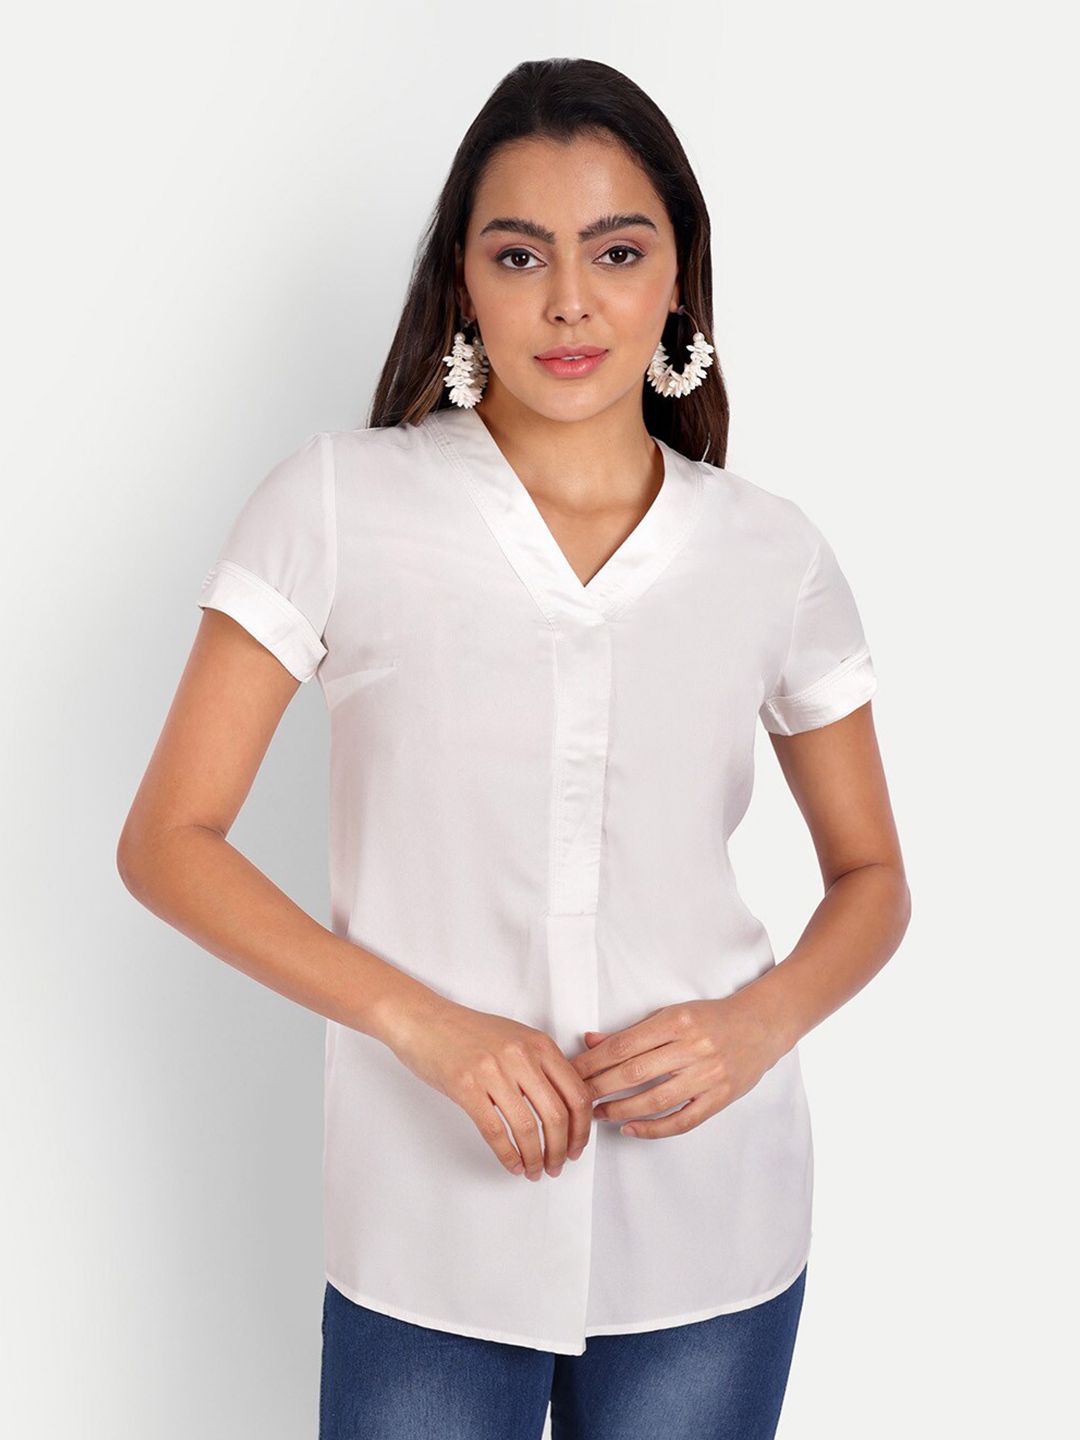 DOLSU V-neck Shirt Style Top Price in India